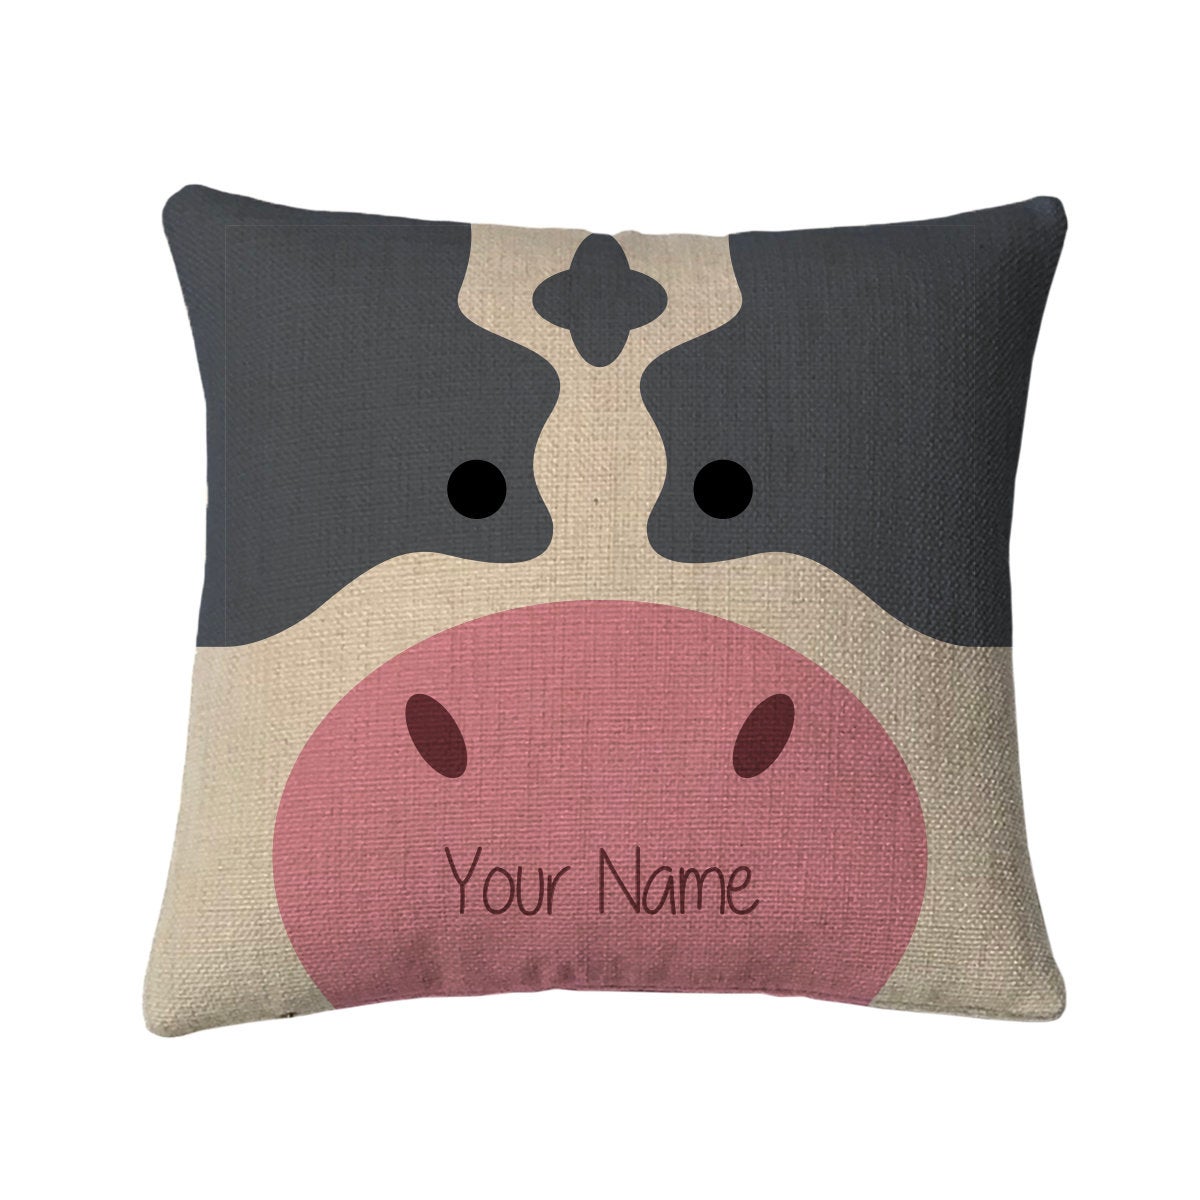 Personalized Cow Mini Throw Pillow